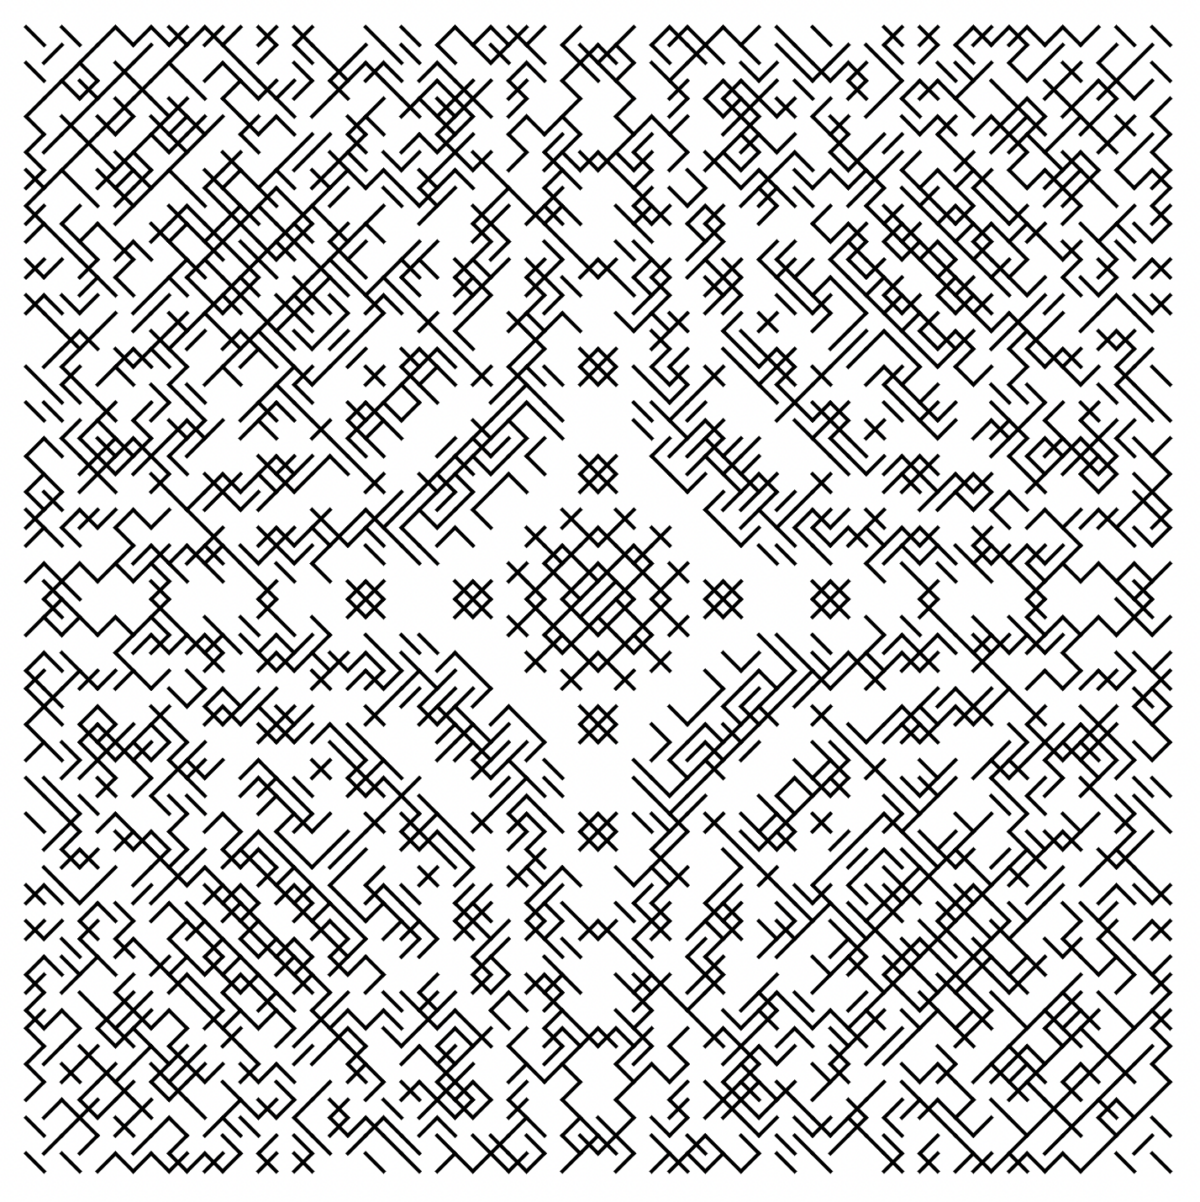 Une image kaléidoscope-esque de symboles de texte noirs sur fond blanc formant une œuvre d'art en forme d'étoile.